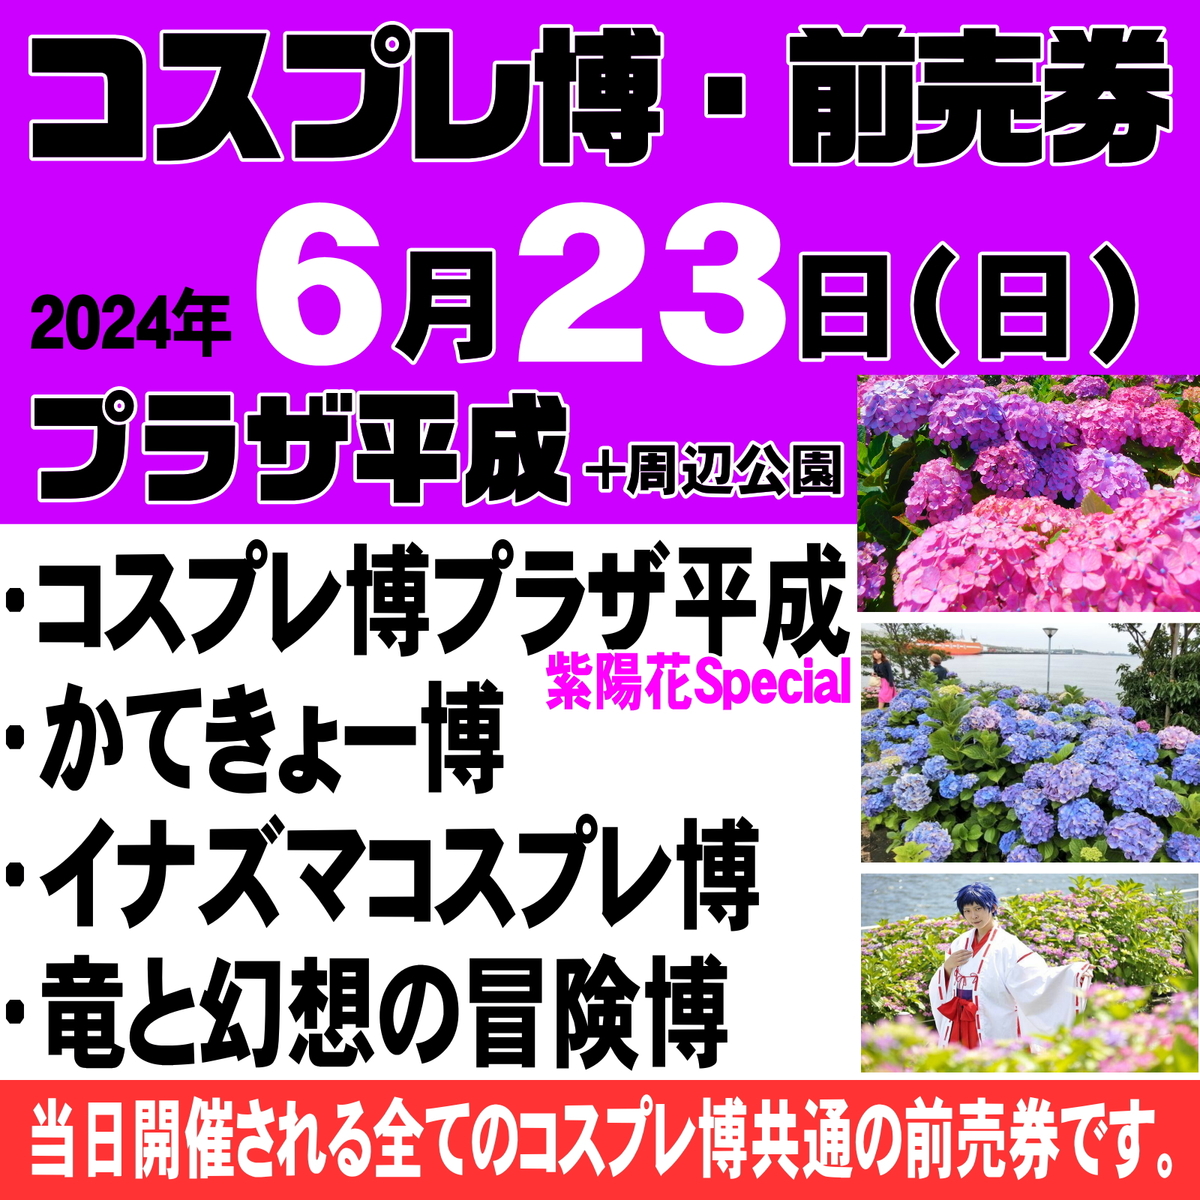 6/23 コスプレ博プラザ平成・あじさいSpecial